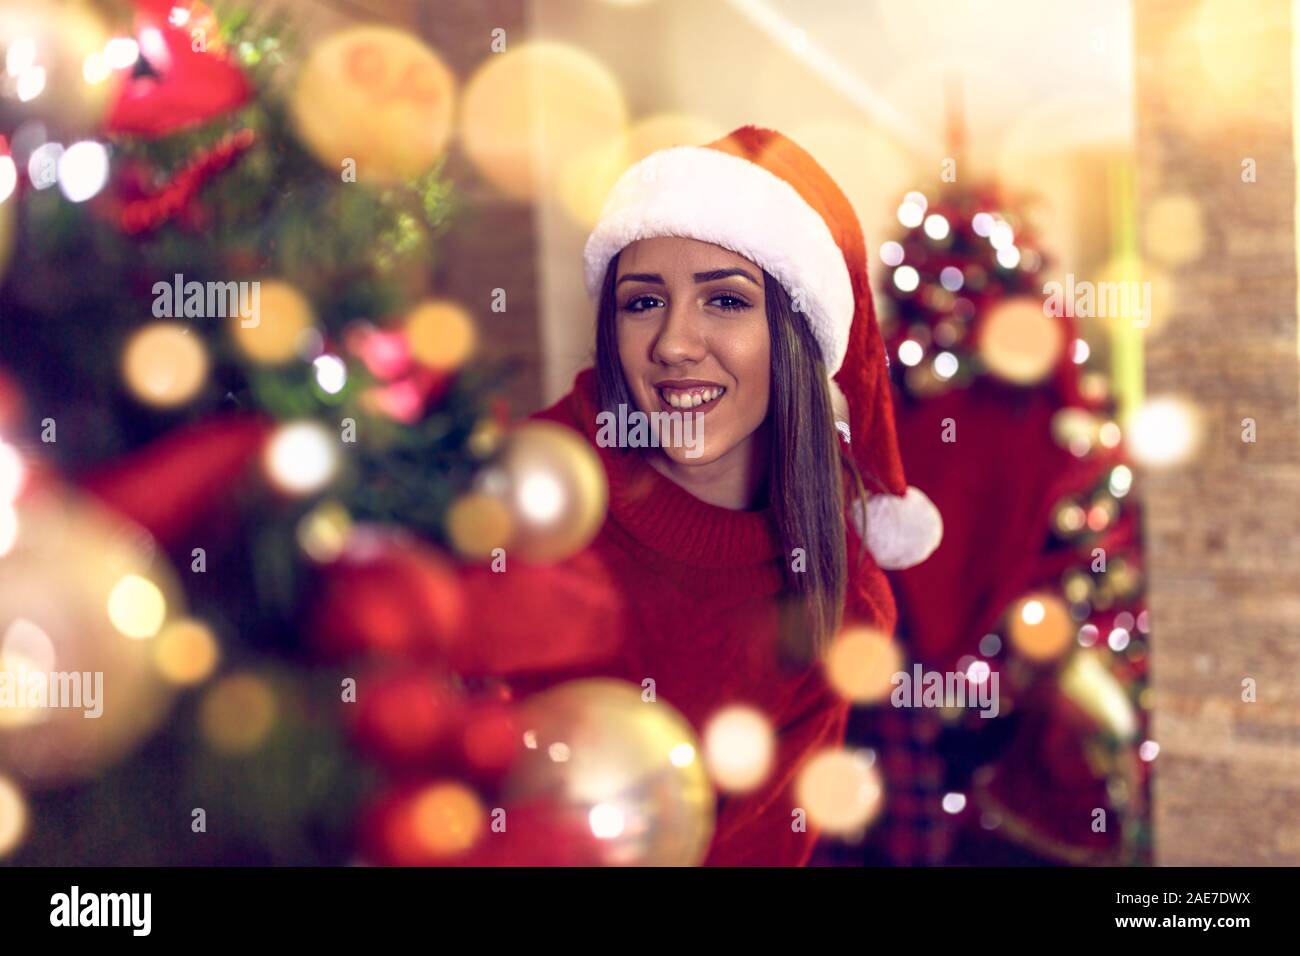 Smiling Girl célébrer les fêtes de Noël Banque D'Images